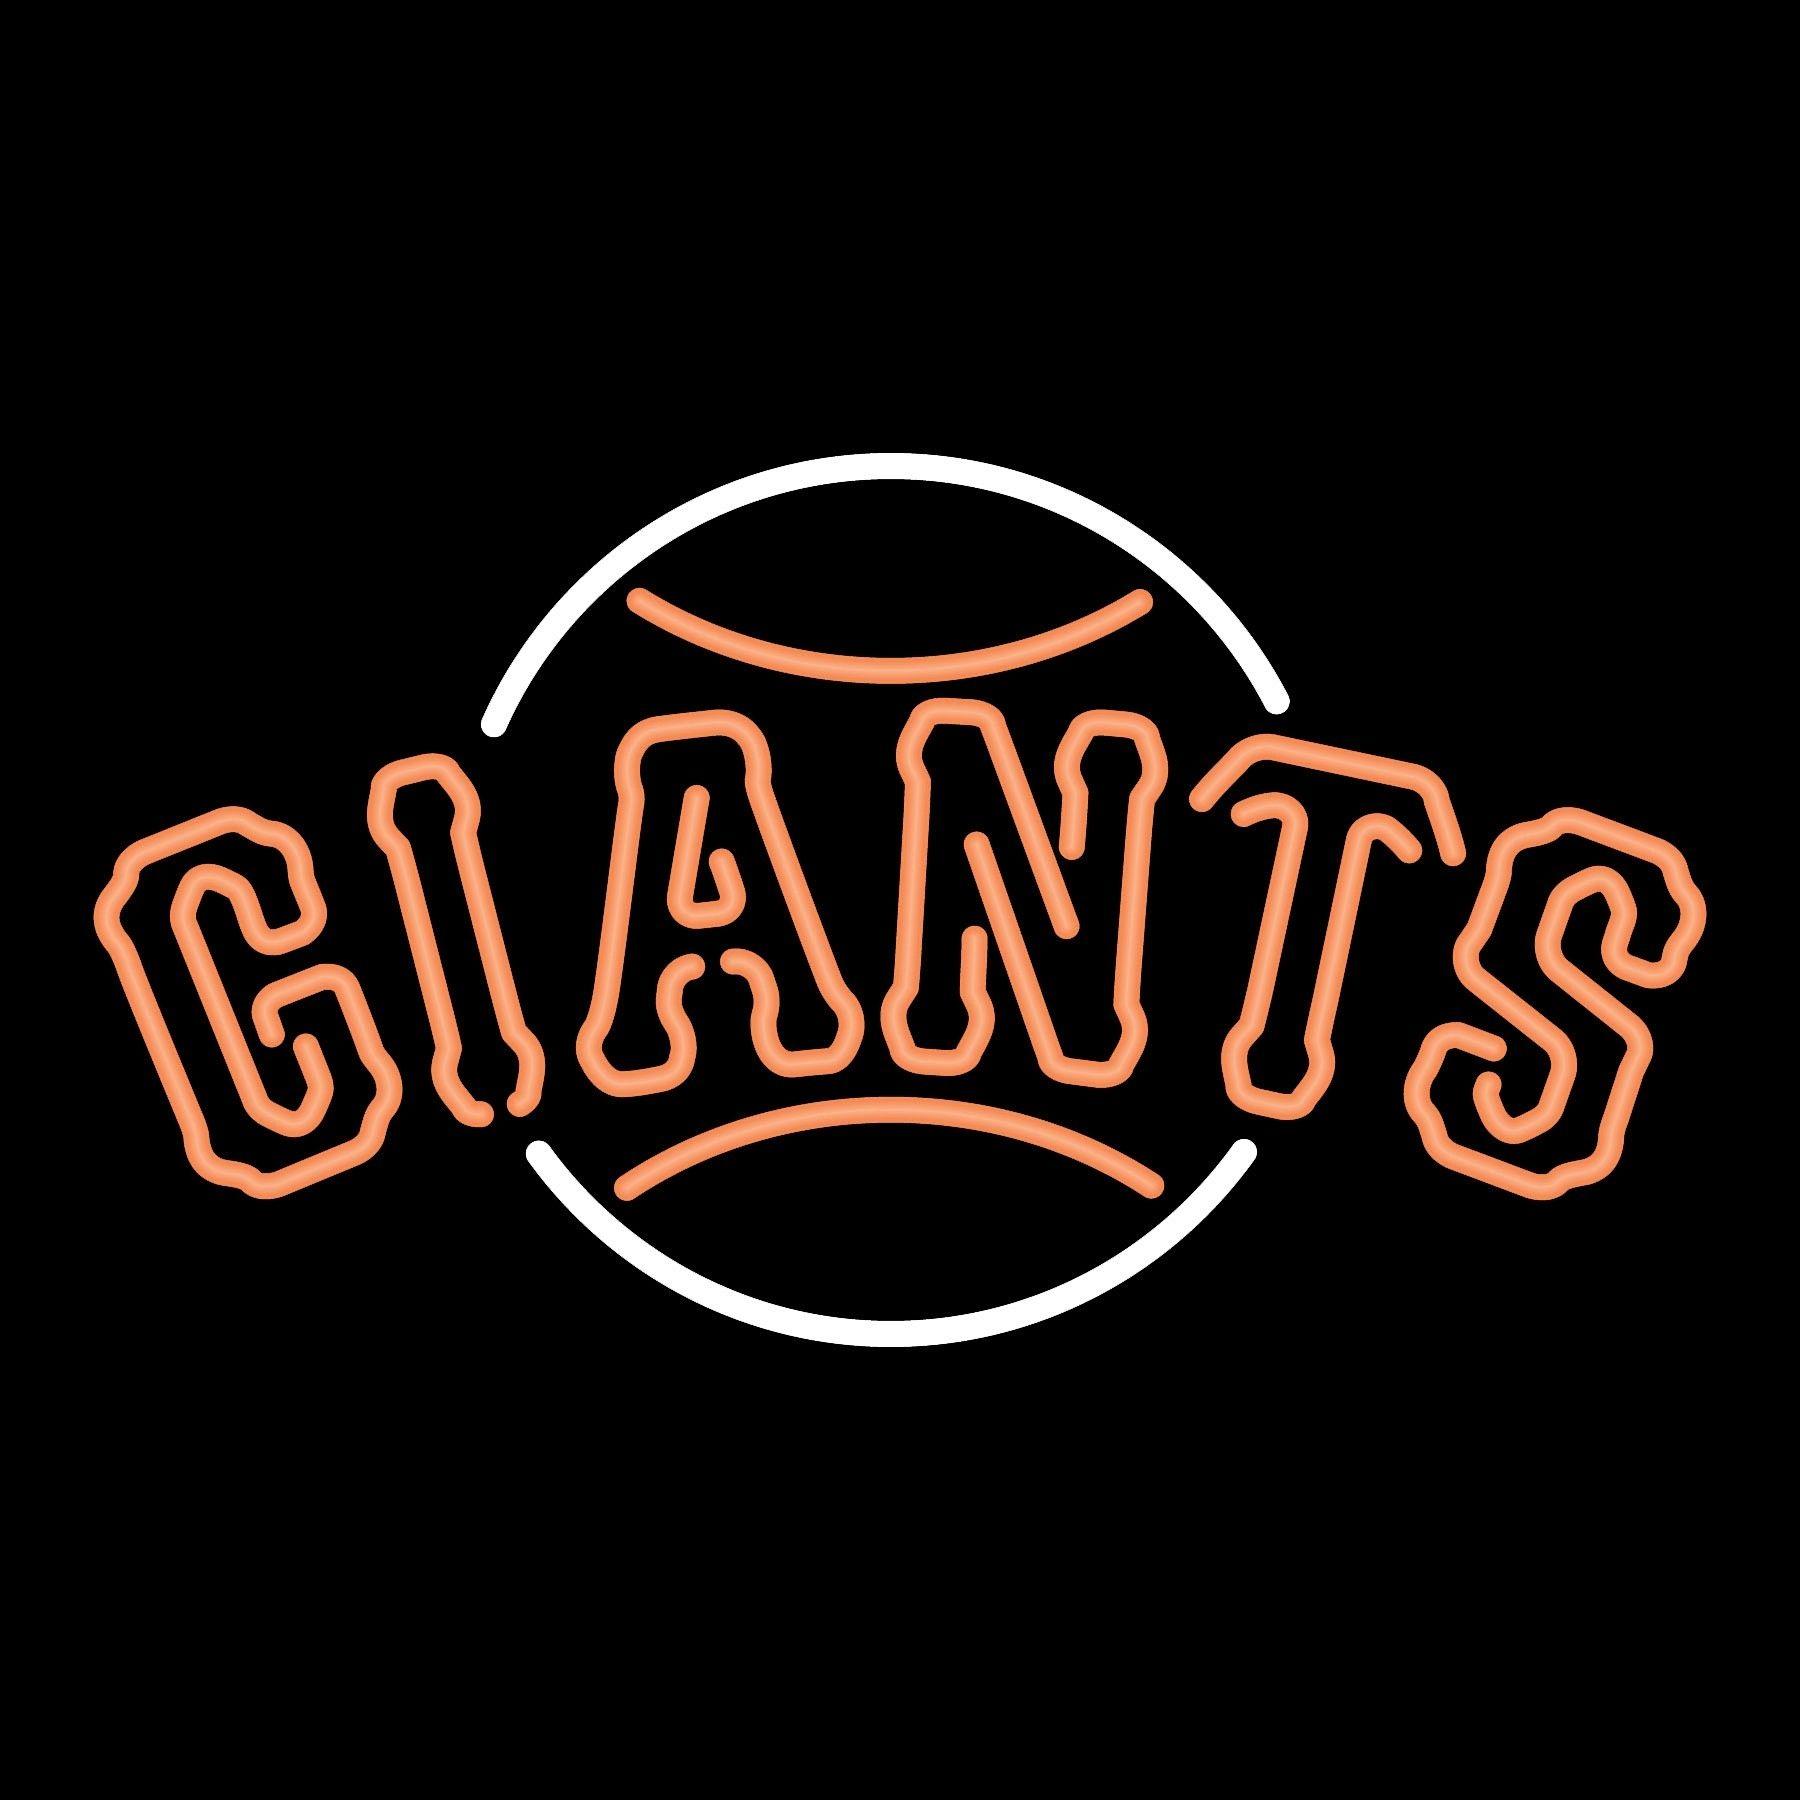 SF Giants iPhone Wallpaper - WallpaperSafari  Sf giants logo, Sf giants, San  francisco giants logo